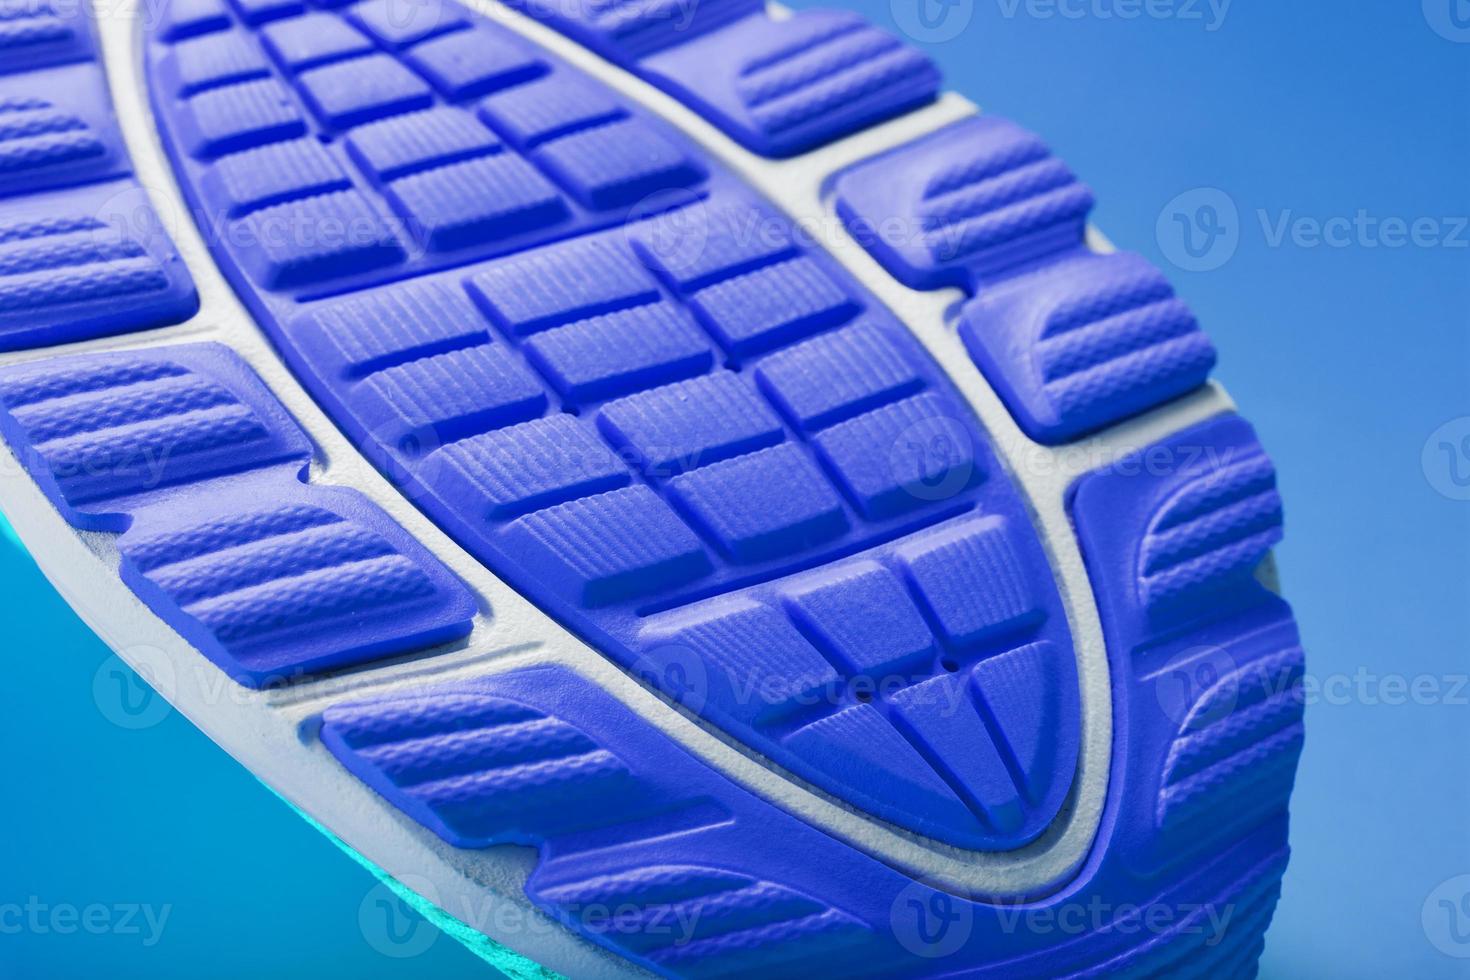 fragmento de la suela de un primer plano de una zapatilla azul. textura texturizada del material de los zapatos deportivos. foto